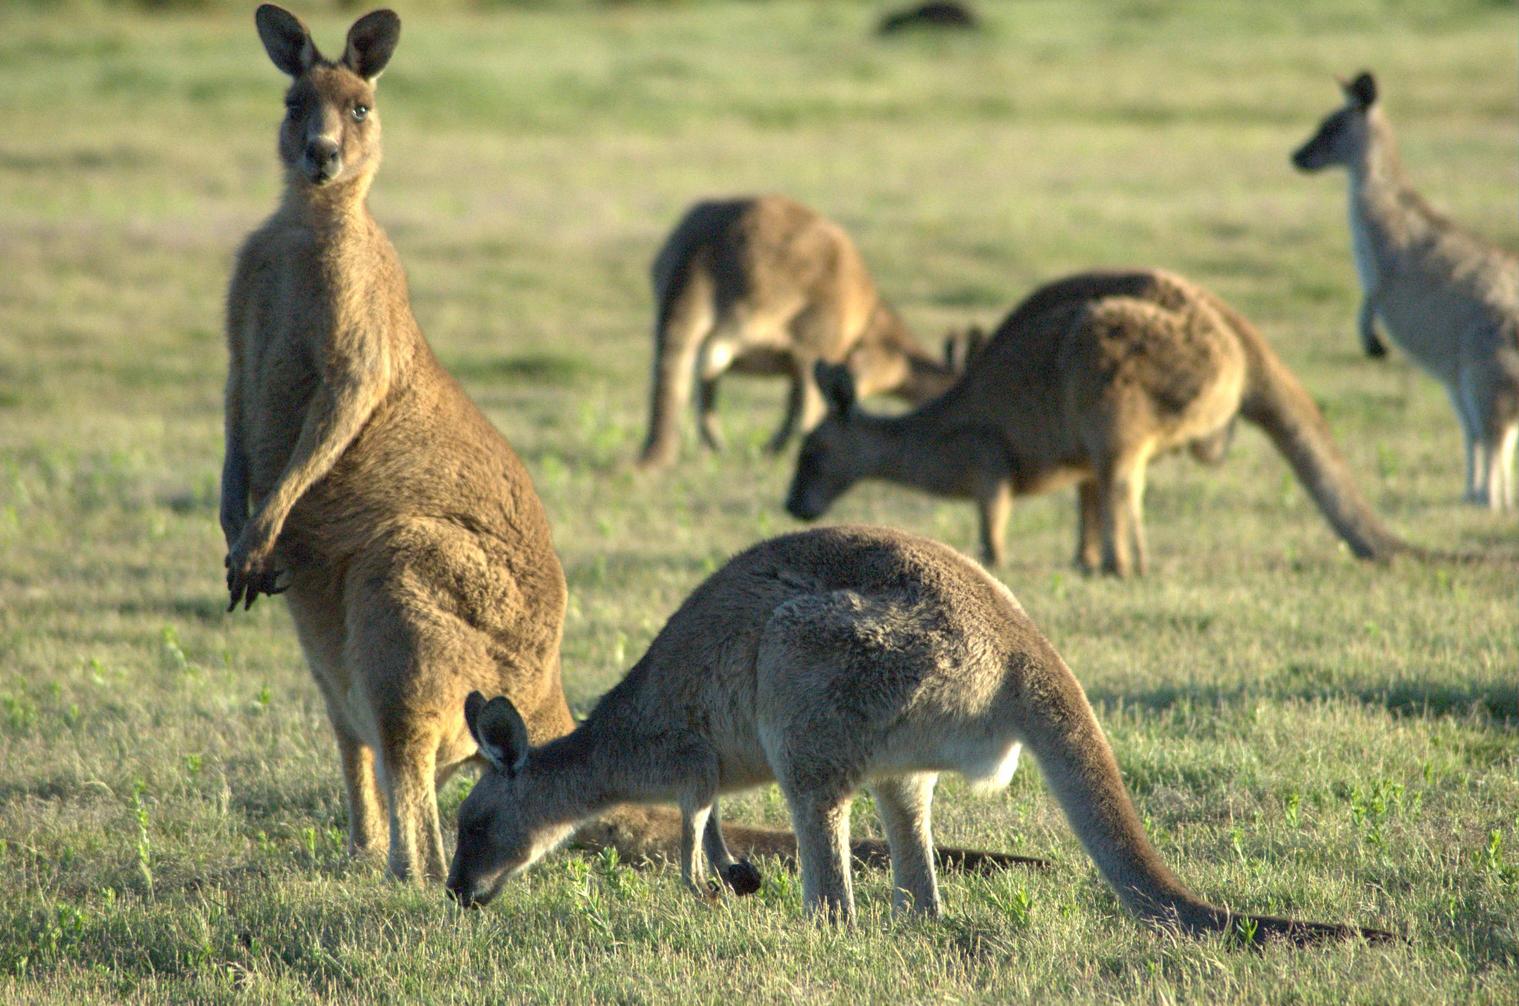 forrester-kangaroo-mob.jpg